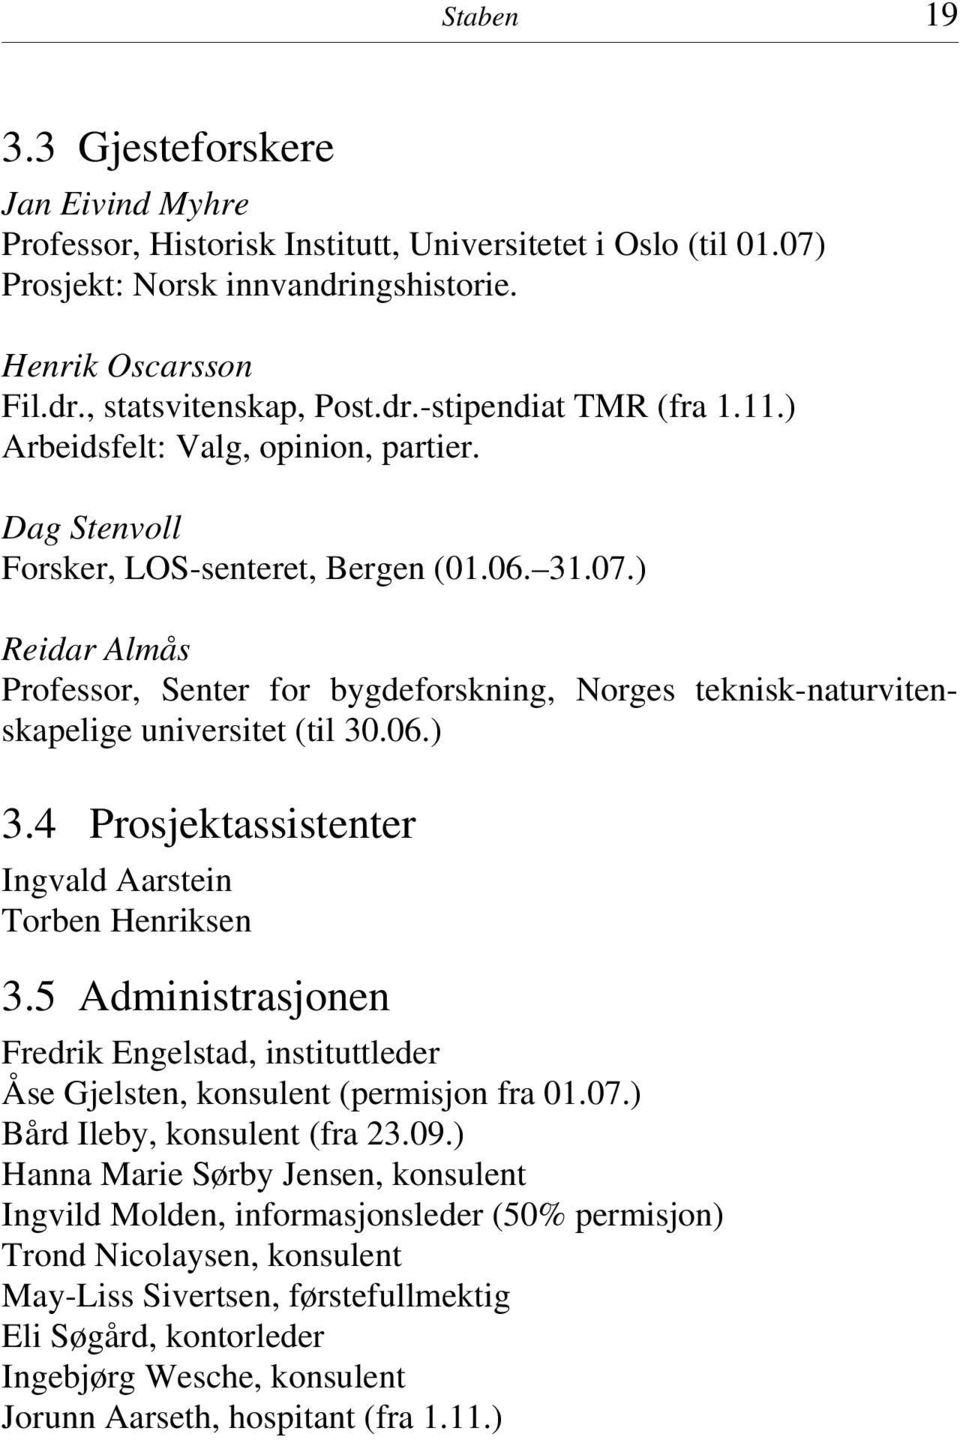 ) Reidar Almås Professor, Senter for bygdeforskning, Norges teknisk-naturvitenskapelige universitet (til 30.06.) 3.4 Prosjektassistenter Ingvald Aarstein Torben Henriksen 3.